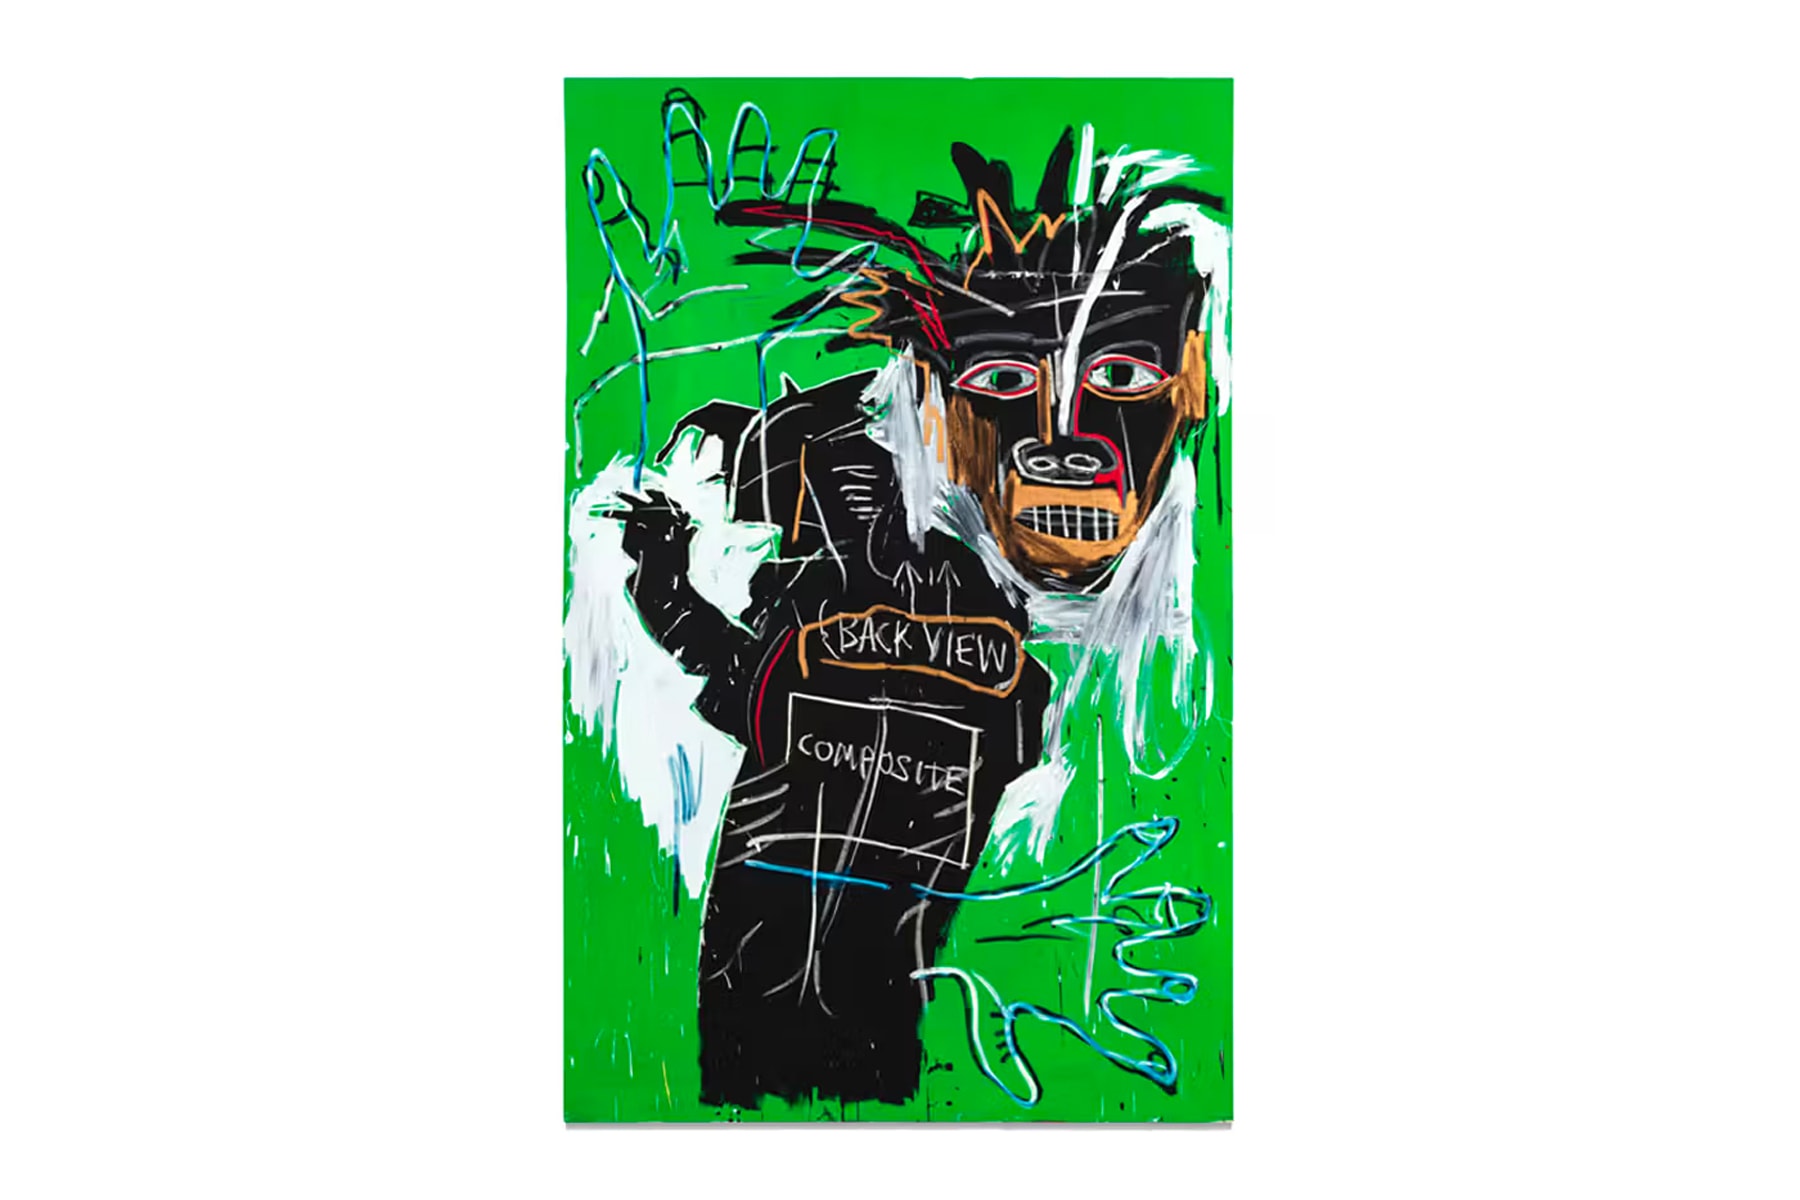 已故藝術家 Jean-Michel Basquiat 自畫像《Self Portrait as a Heel, Part Two》即將展開拍賣